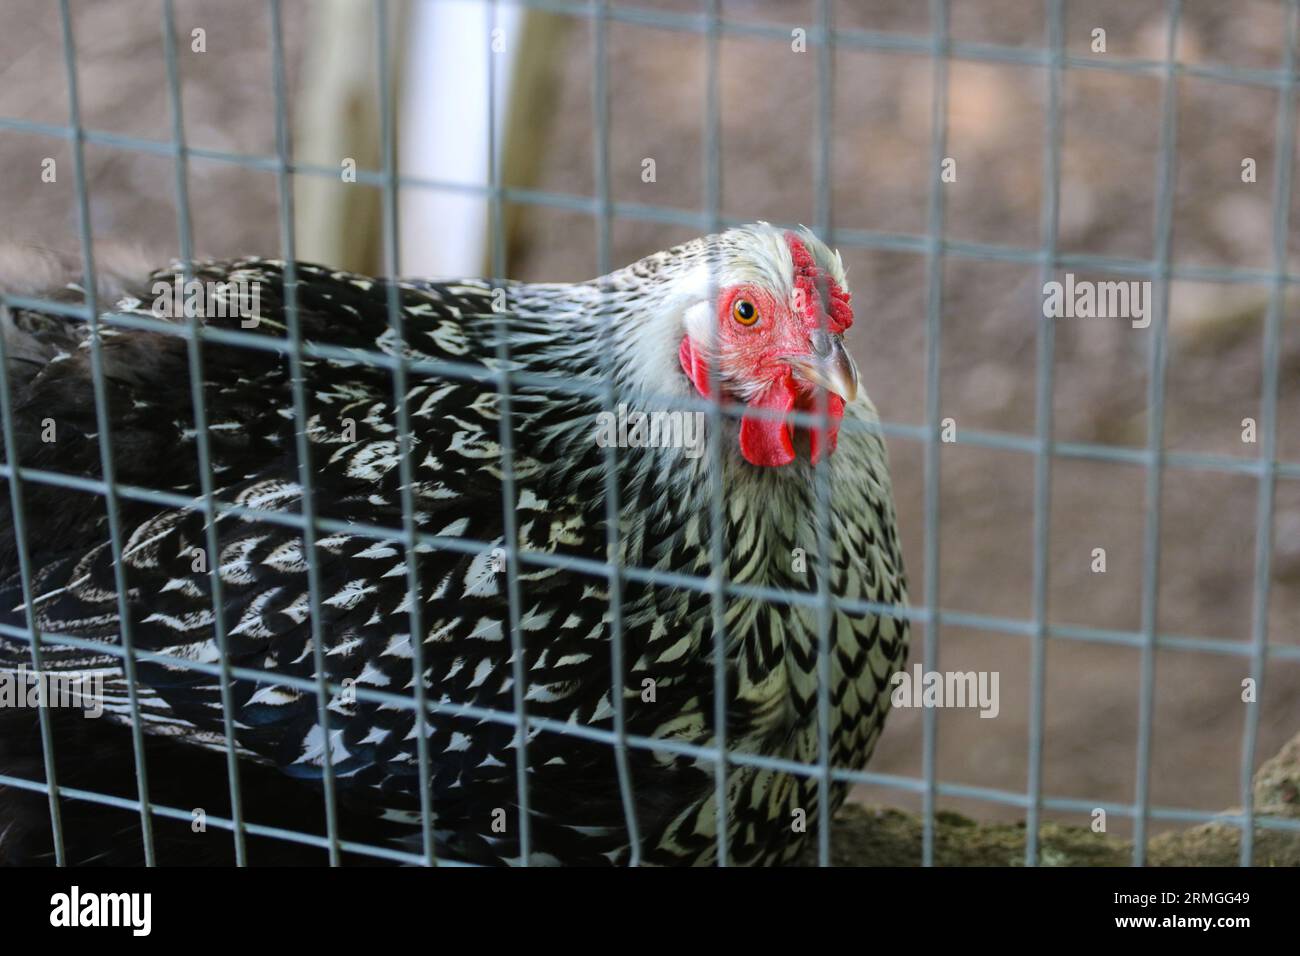 Primo piano medio di un pollo wyandotte color argento con lacci nero che sbircia attraverso una recinzione. Profondità di campo ridotta Foto Stock